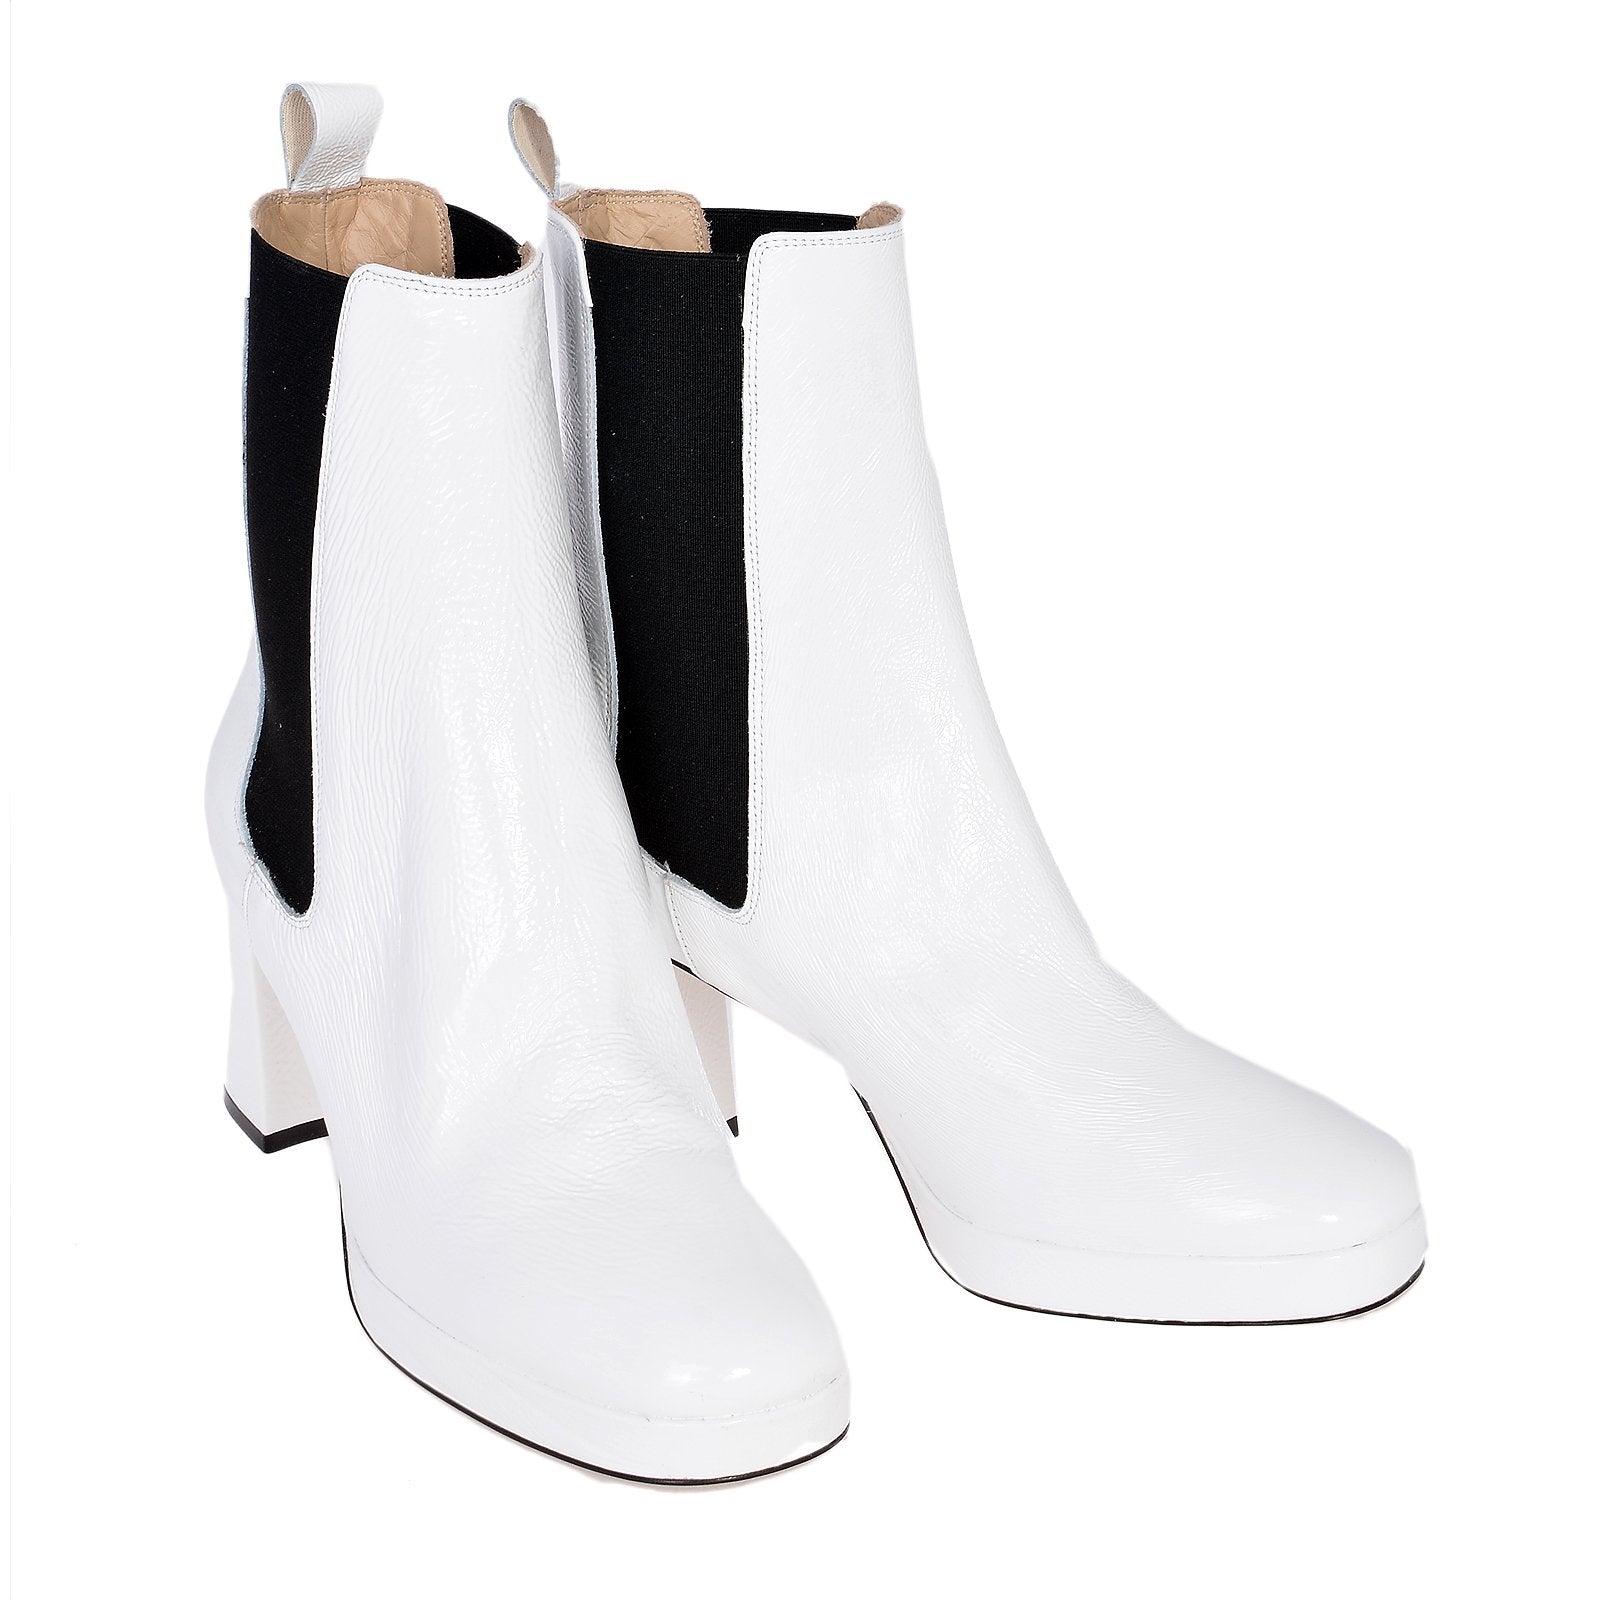 Nebo White Naplak Boots I-1960-White - 2